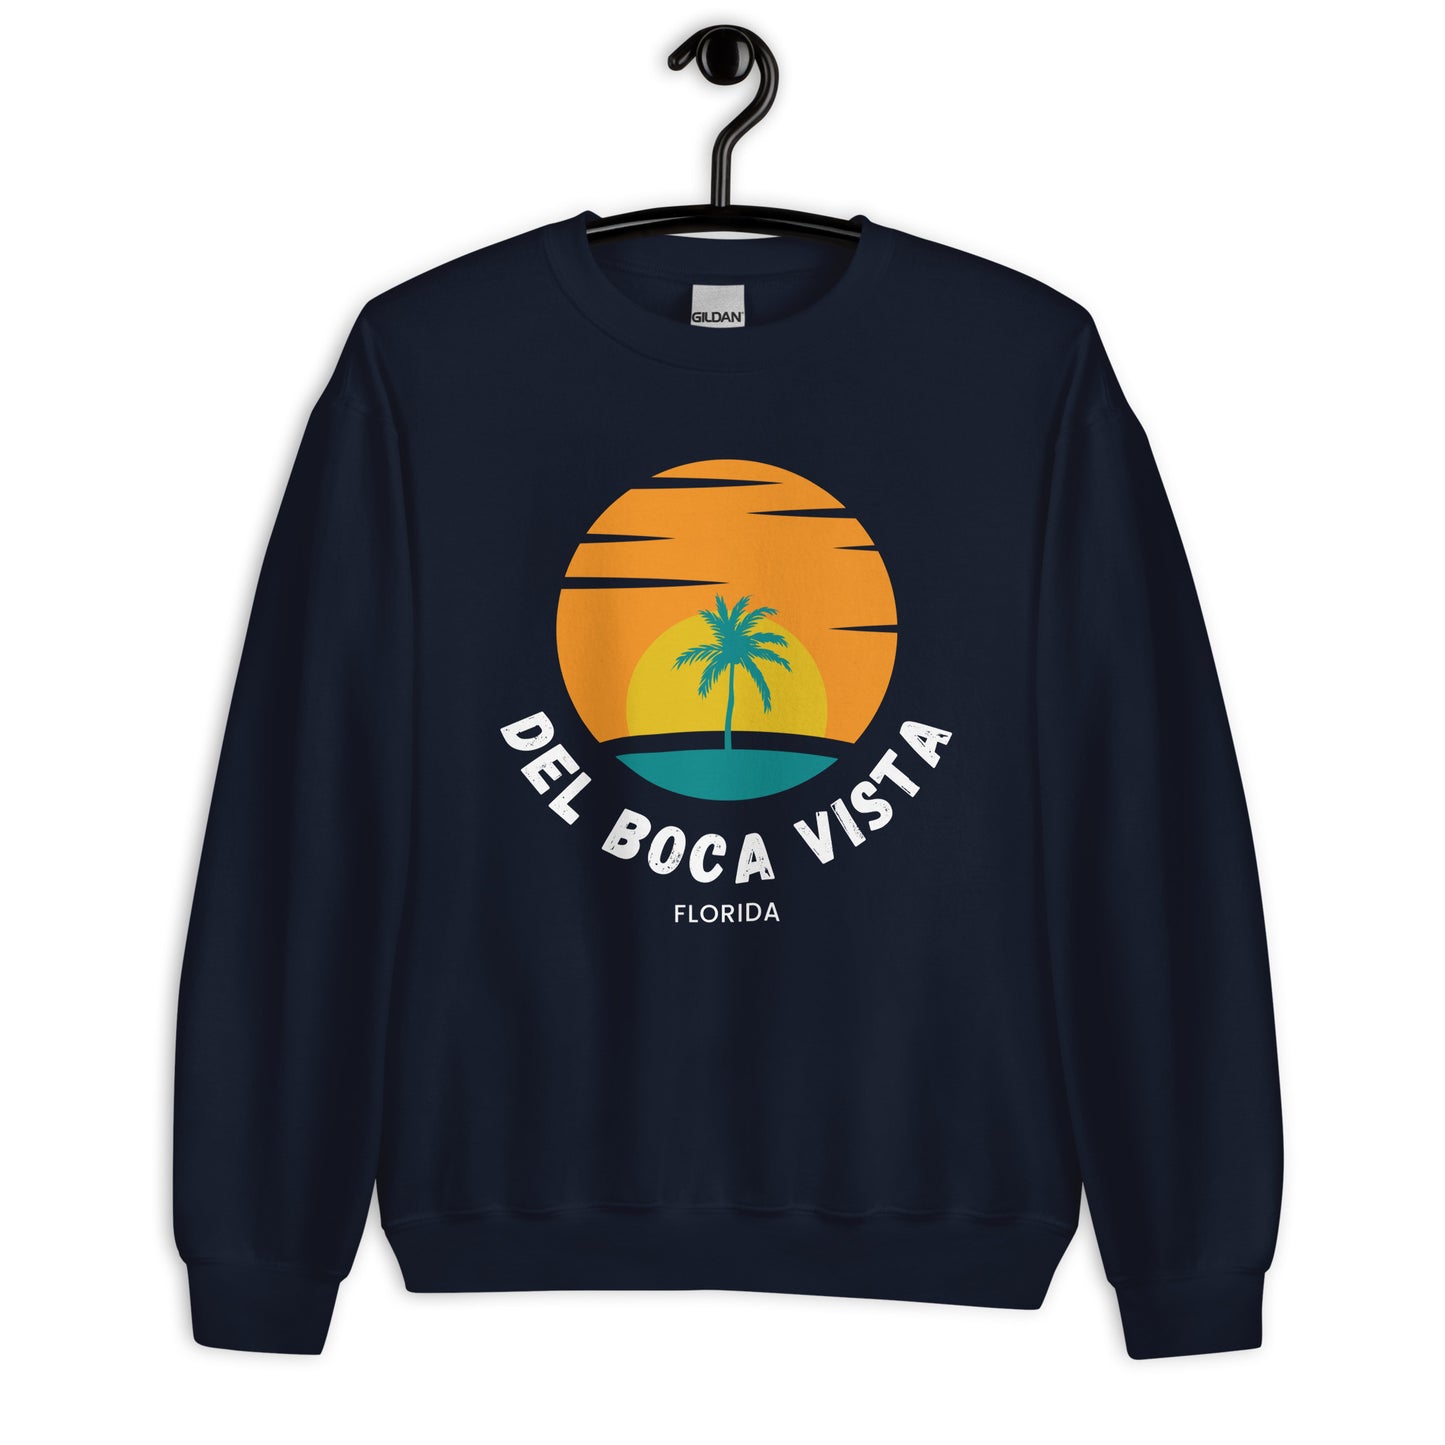 Del Boca Vista Comedy Sweatshirt